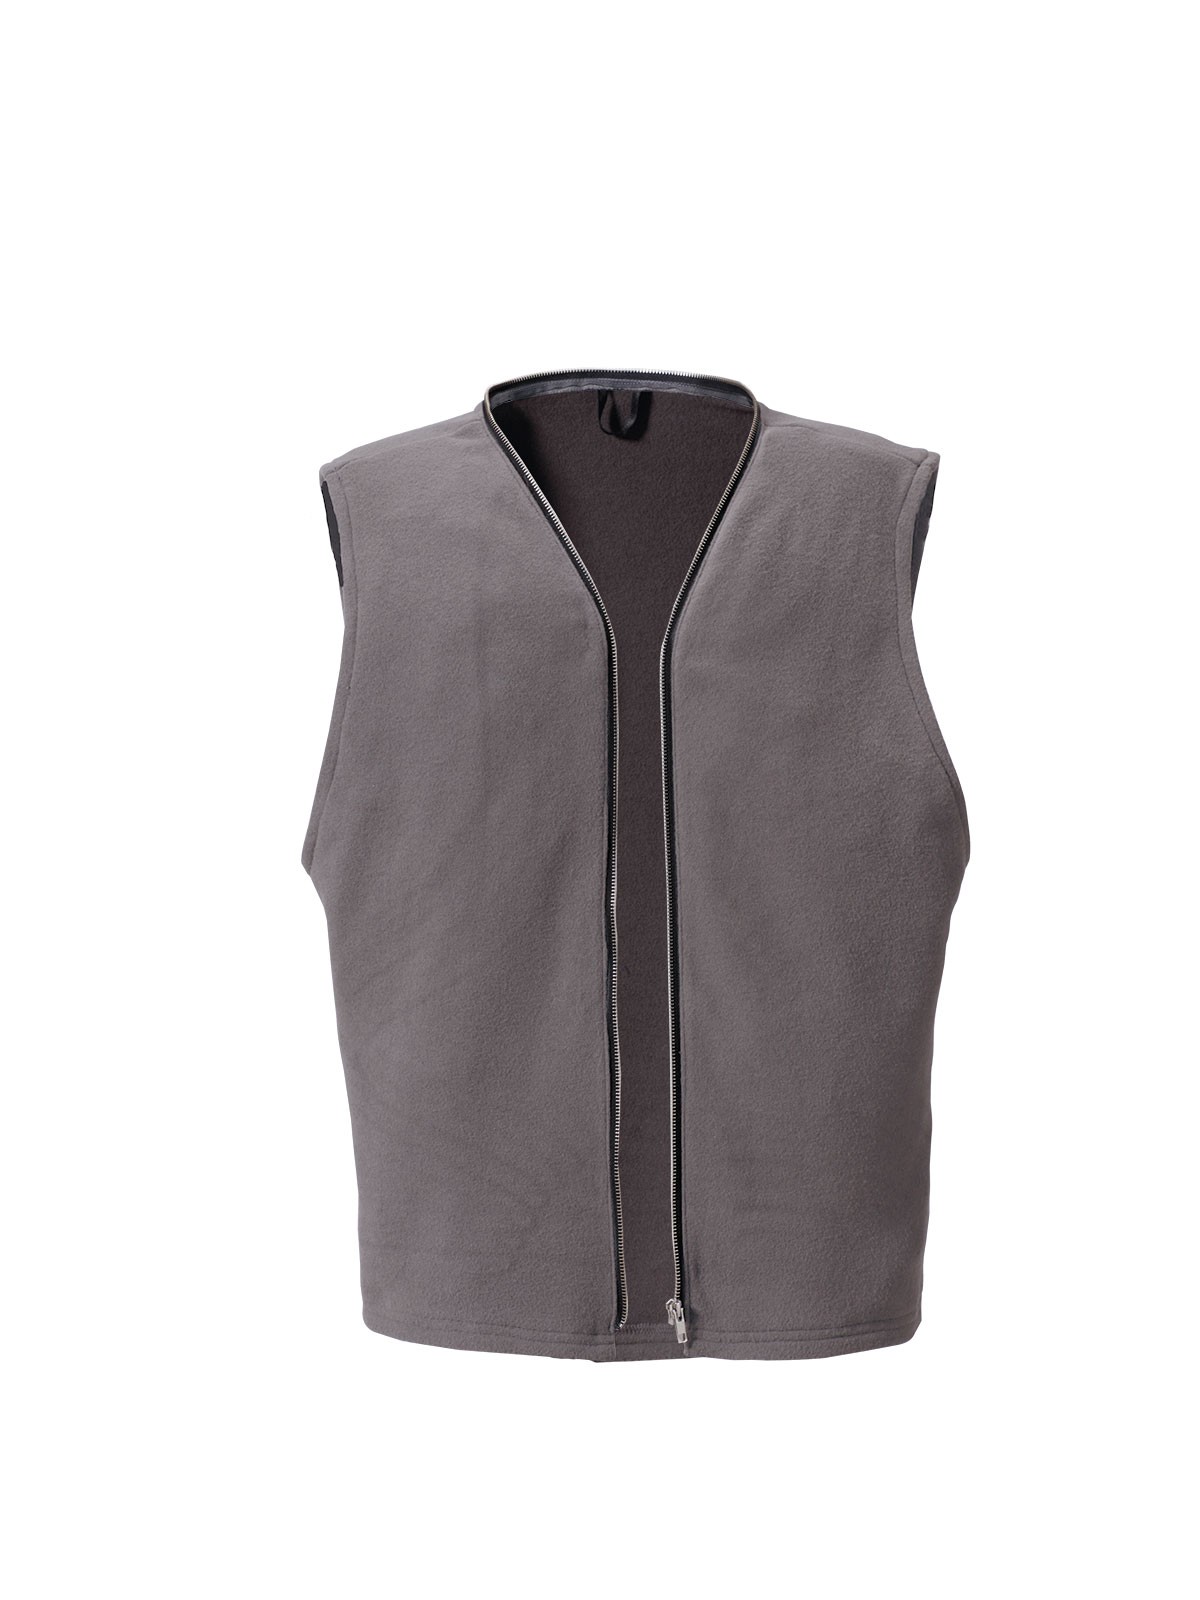 ROFA-Workwear, Winterfutter ohne Arm, ca. 300 g/m², grau